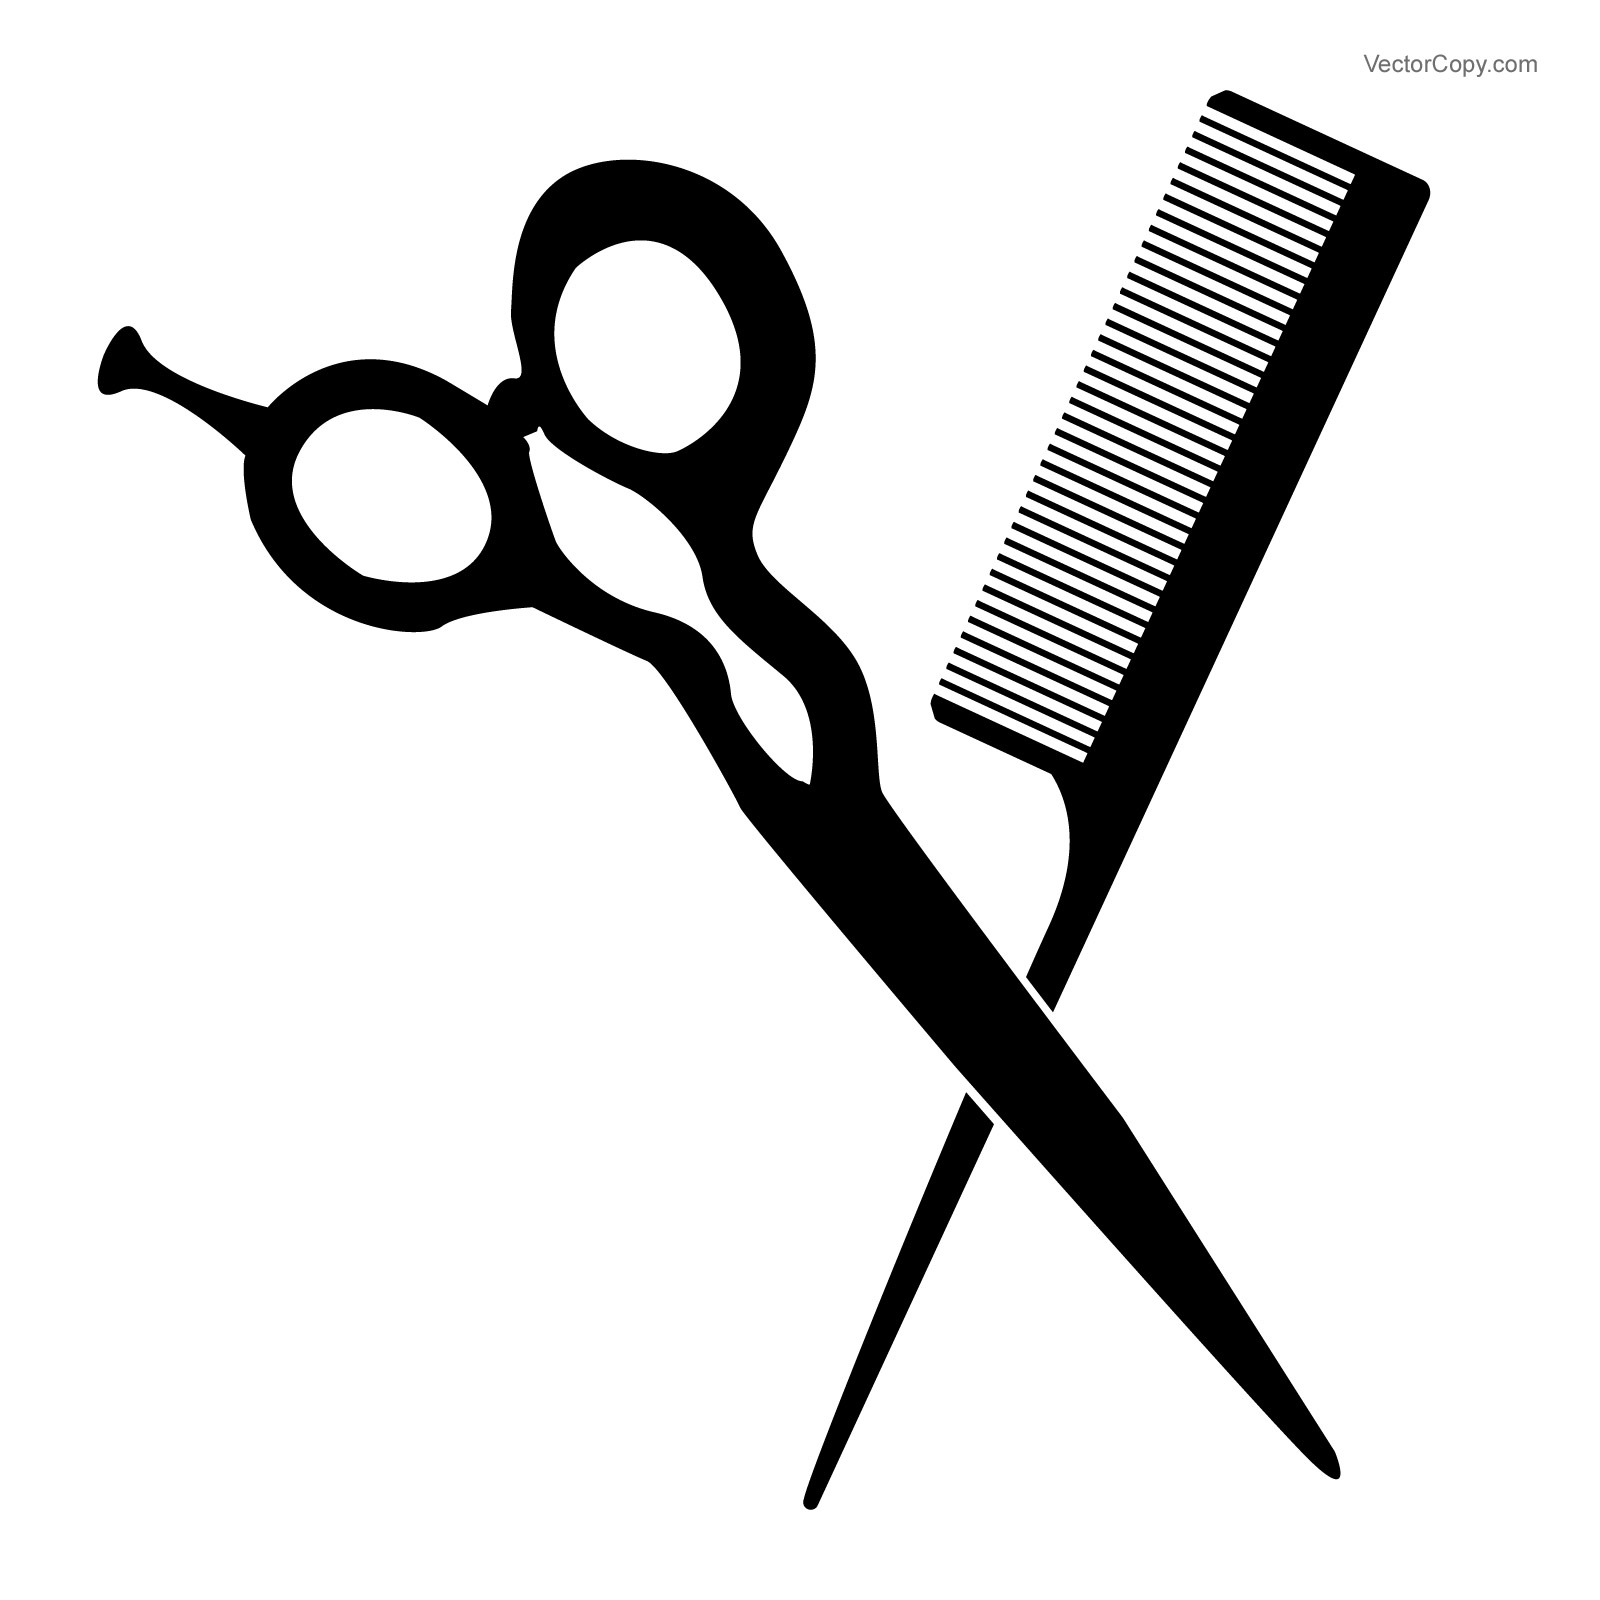 Scissors clip art cartoon vec